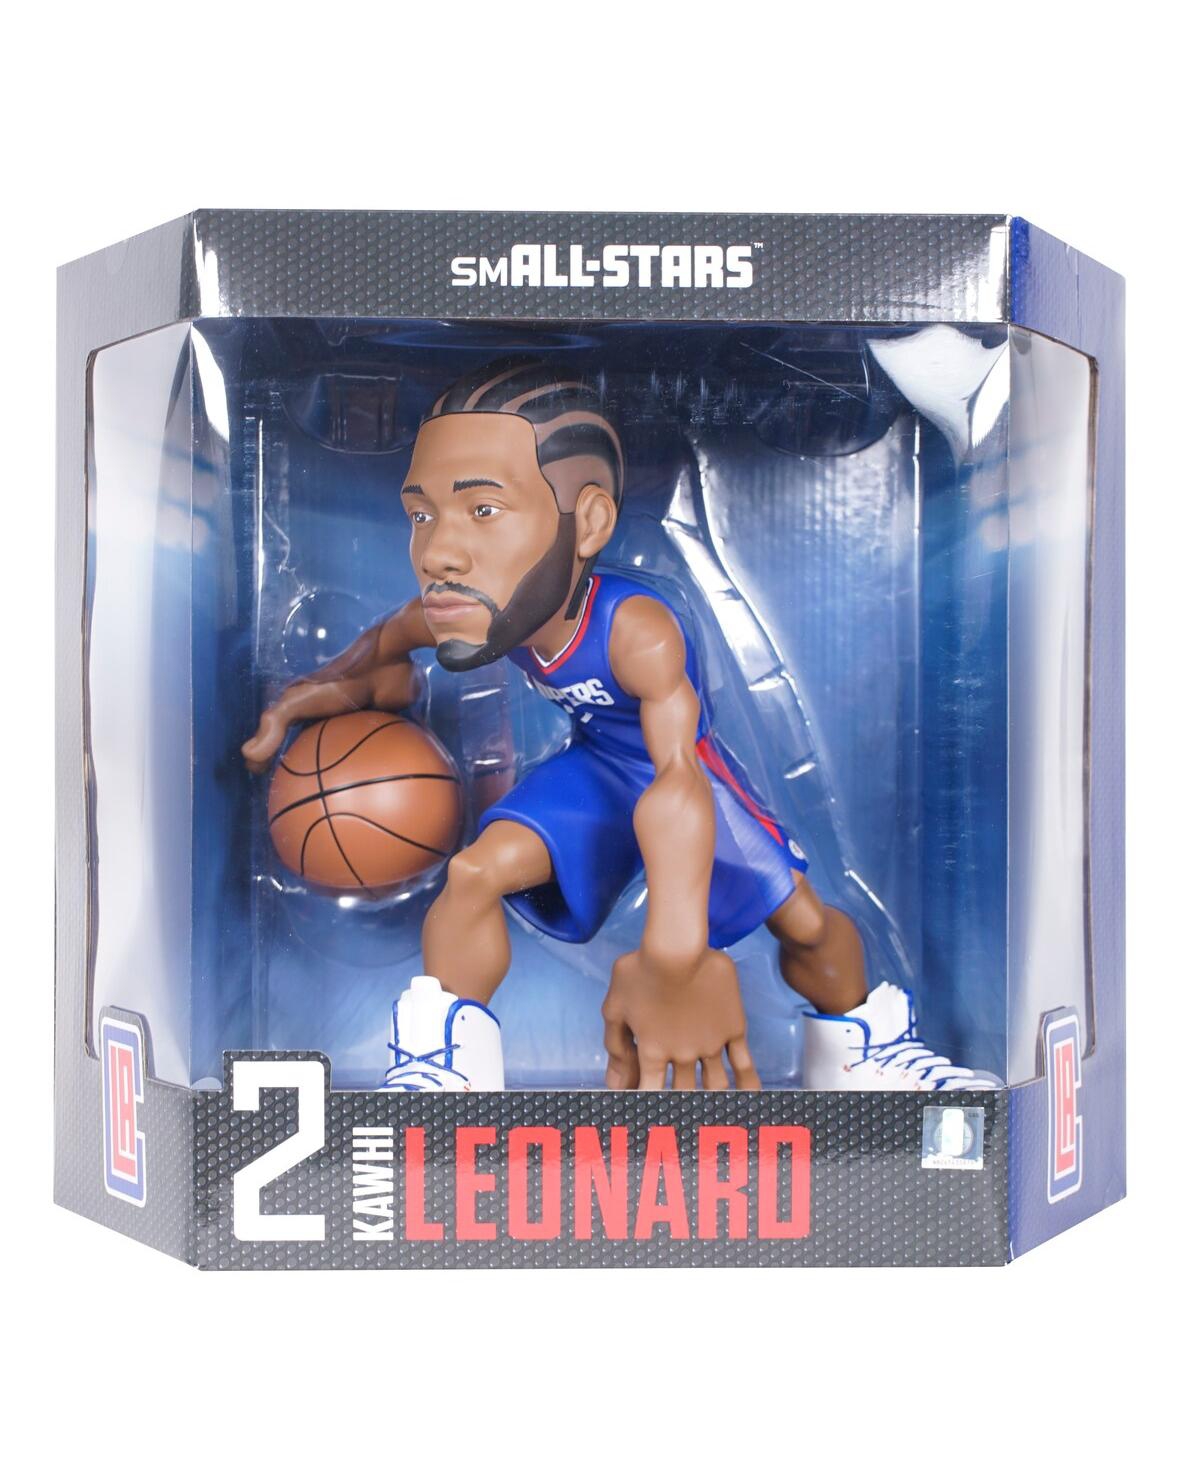 Small-stars Kawhi Leonard La Clippers  12" Vinyl Figurine In Multi